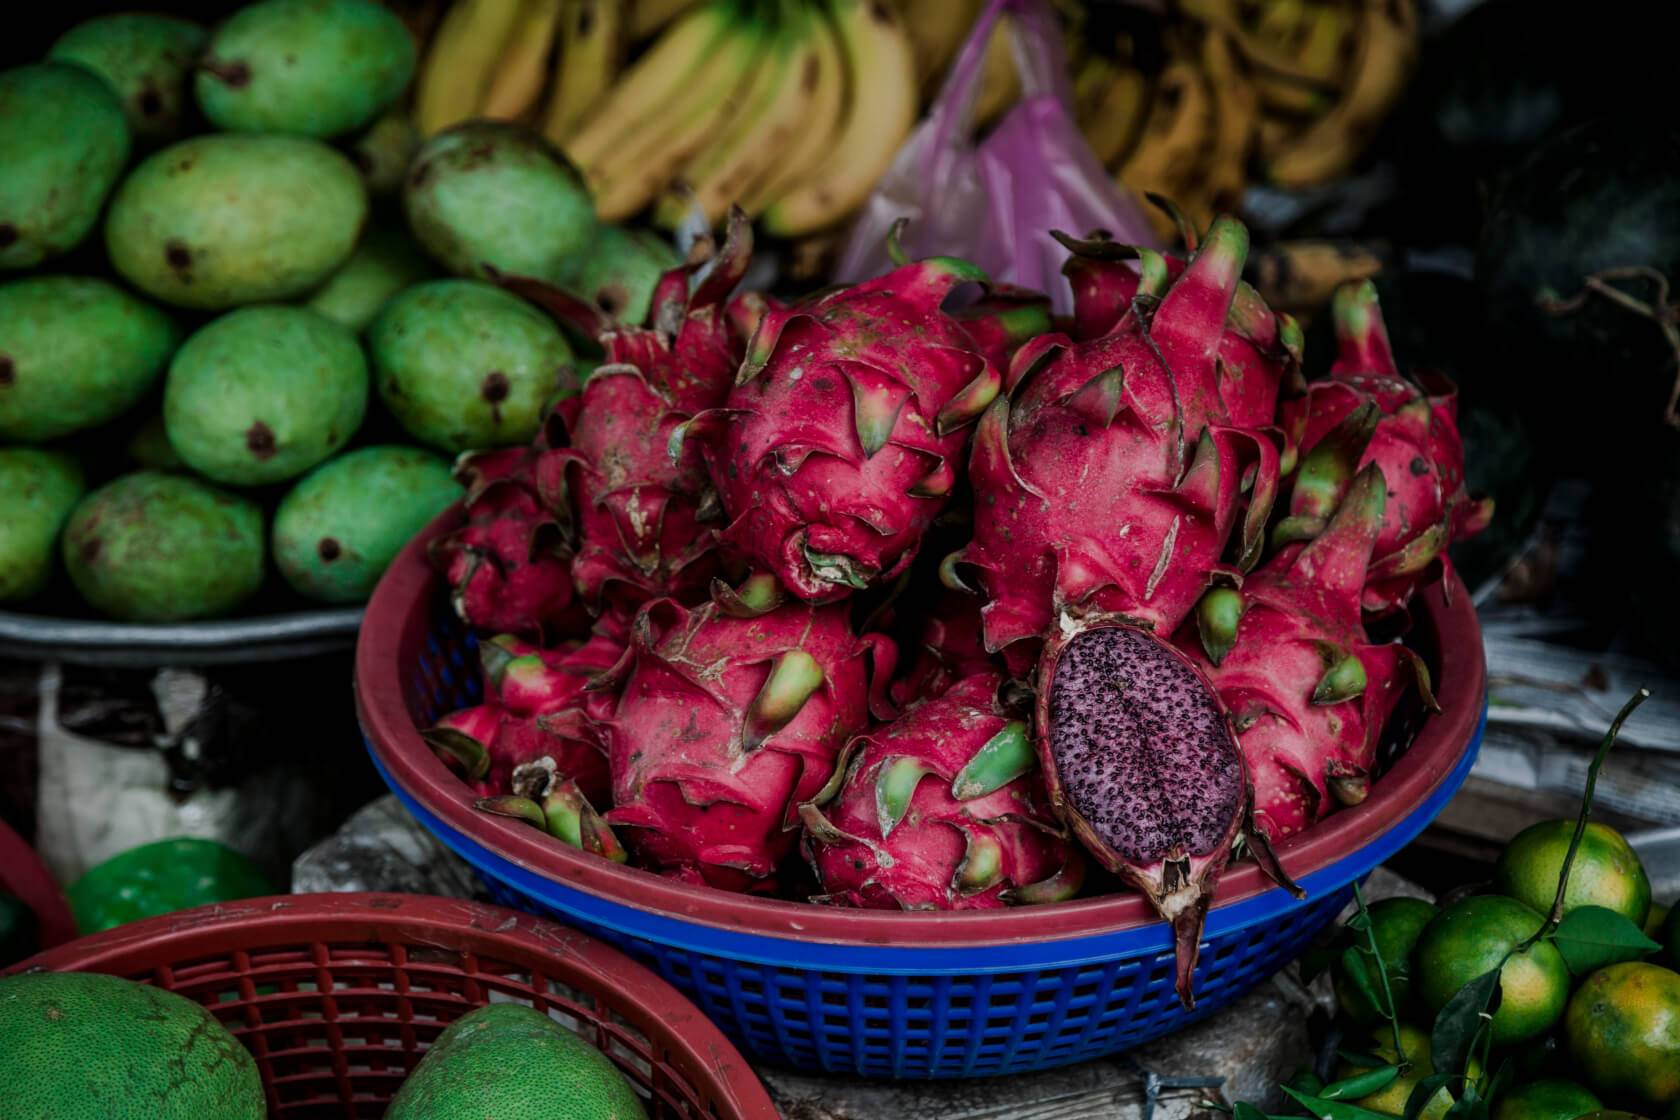 вьетнам фрукты описание